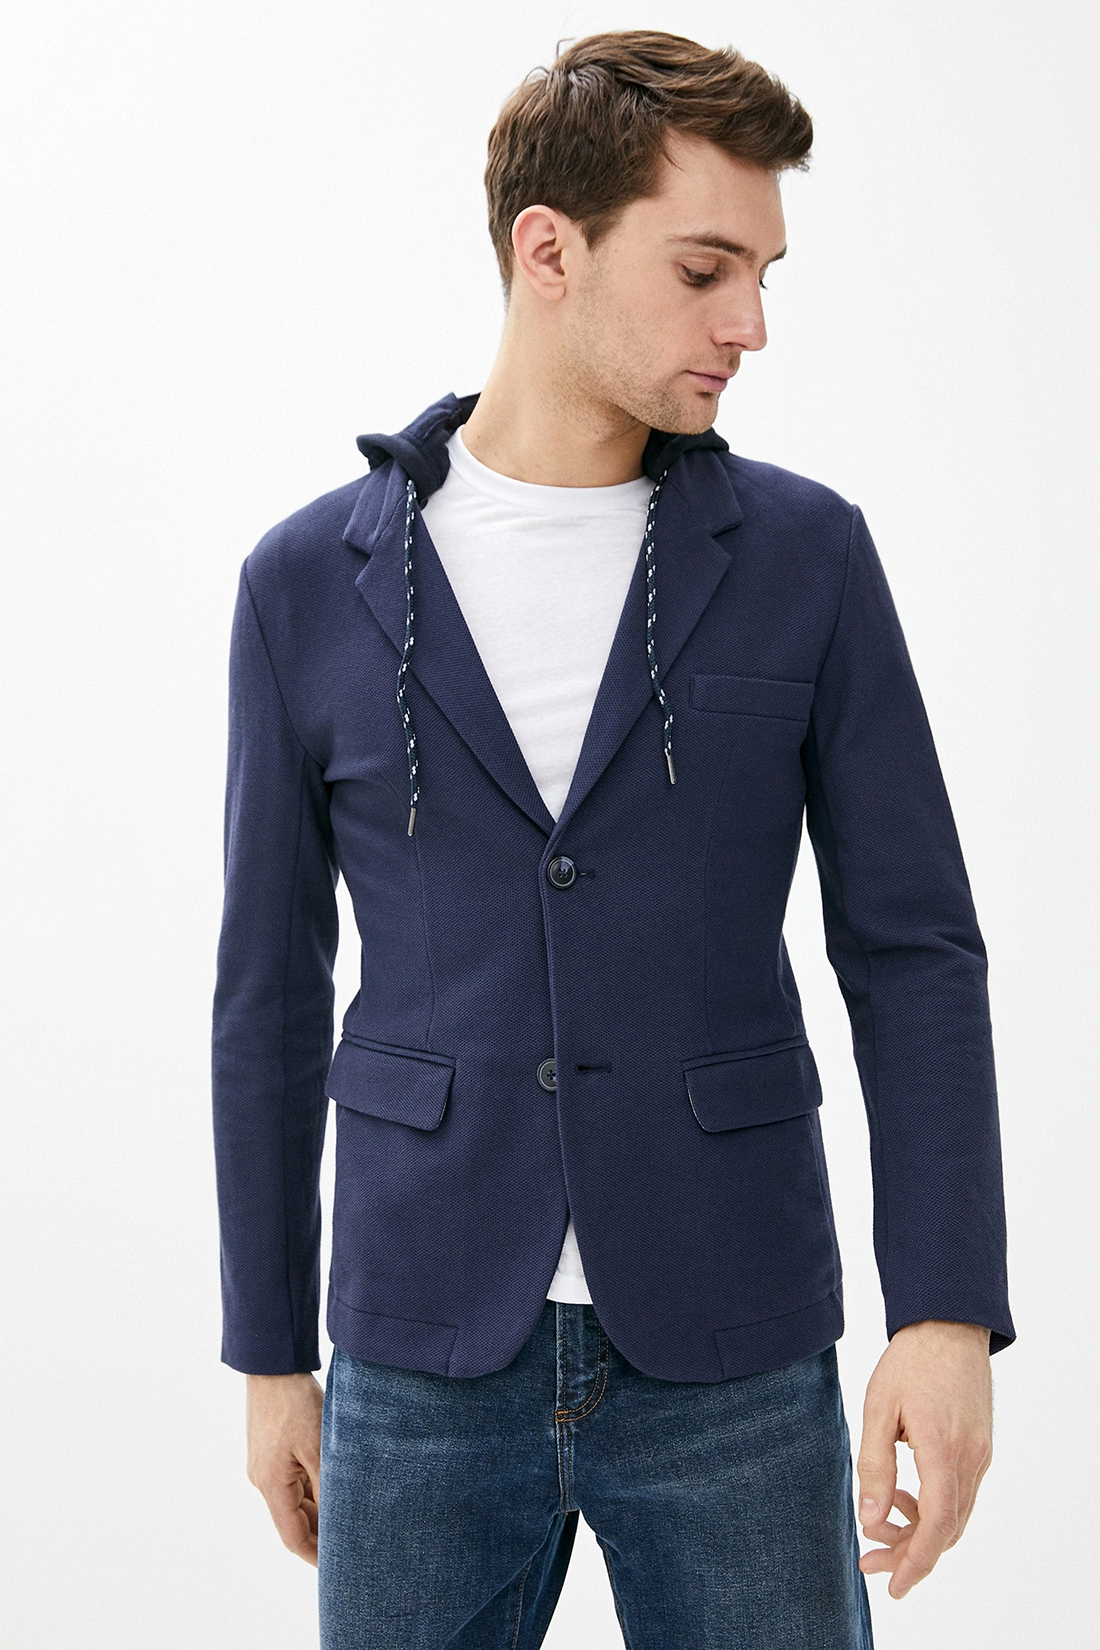 Пиджак с капюшоном (арт. baon B620005), размер XL, цвет синий